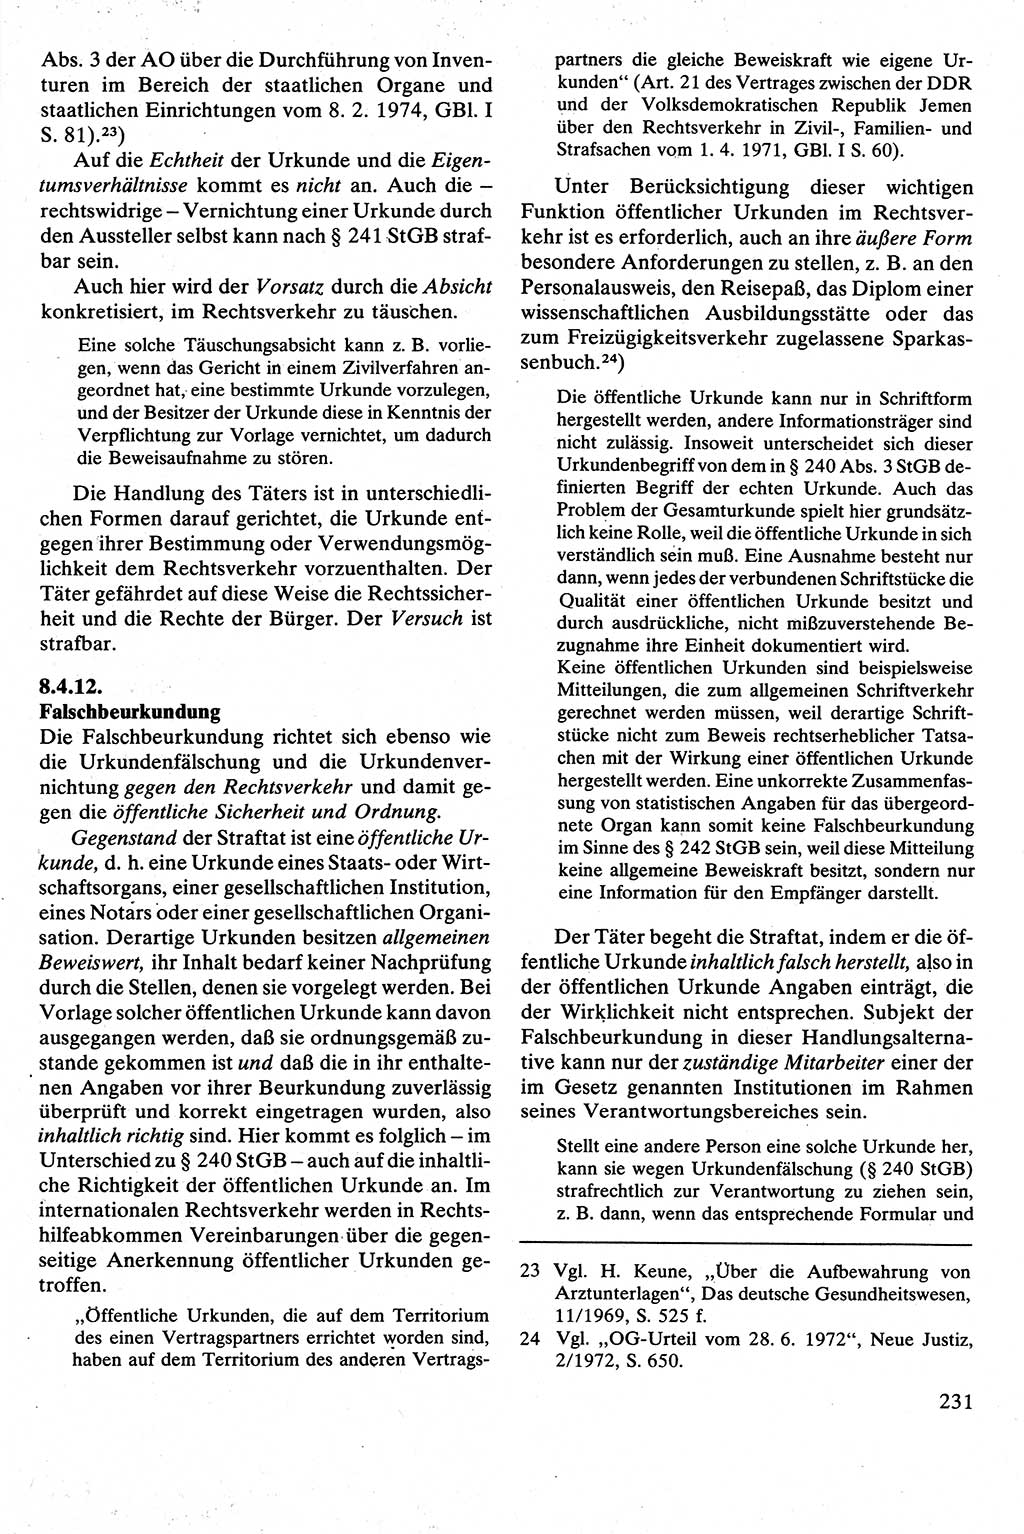 Strafrecht [Deutsche Demokratische Republik (DDR)], Besonderer Teil, Lehrbuch 1981, Seite 231 (Strafr. DDR BT Lb. 1981, S. 231)